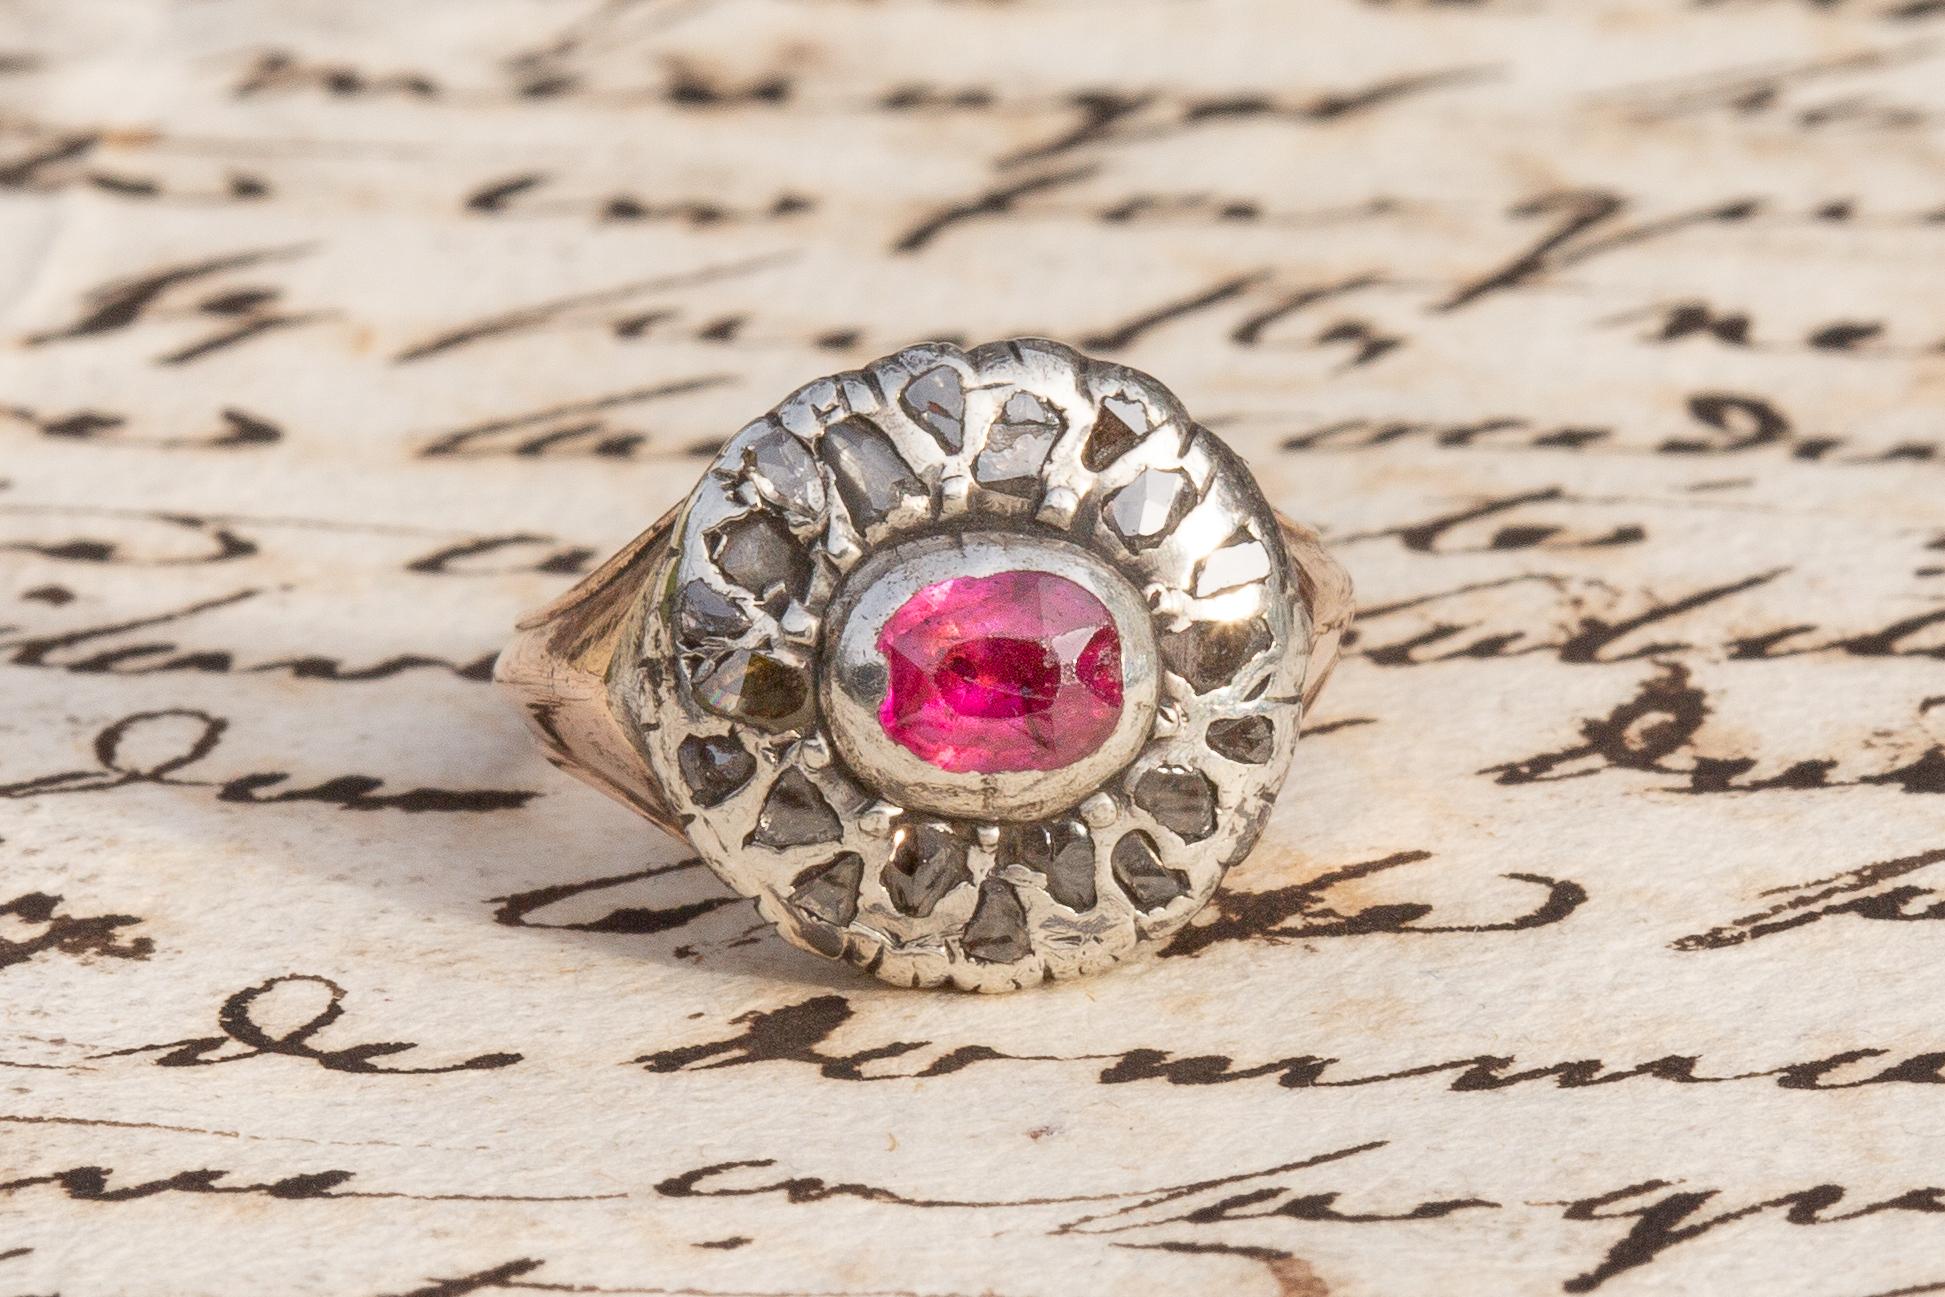 Cette inhabituelle bague à grappe florale en rubis et diamants de l'époque géorgienne, datant d'environ 1800, a probablement été fabriquée en Italie. Au centre de la tête de l'anneau se trouve un rubis rose vif serti à l'aide d'un collier et d'une